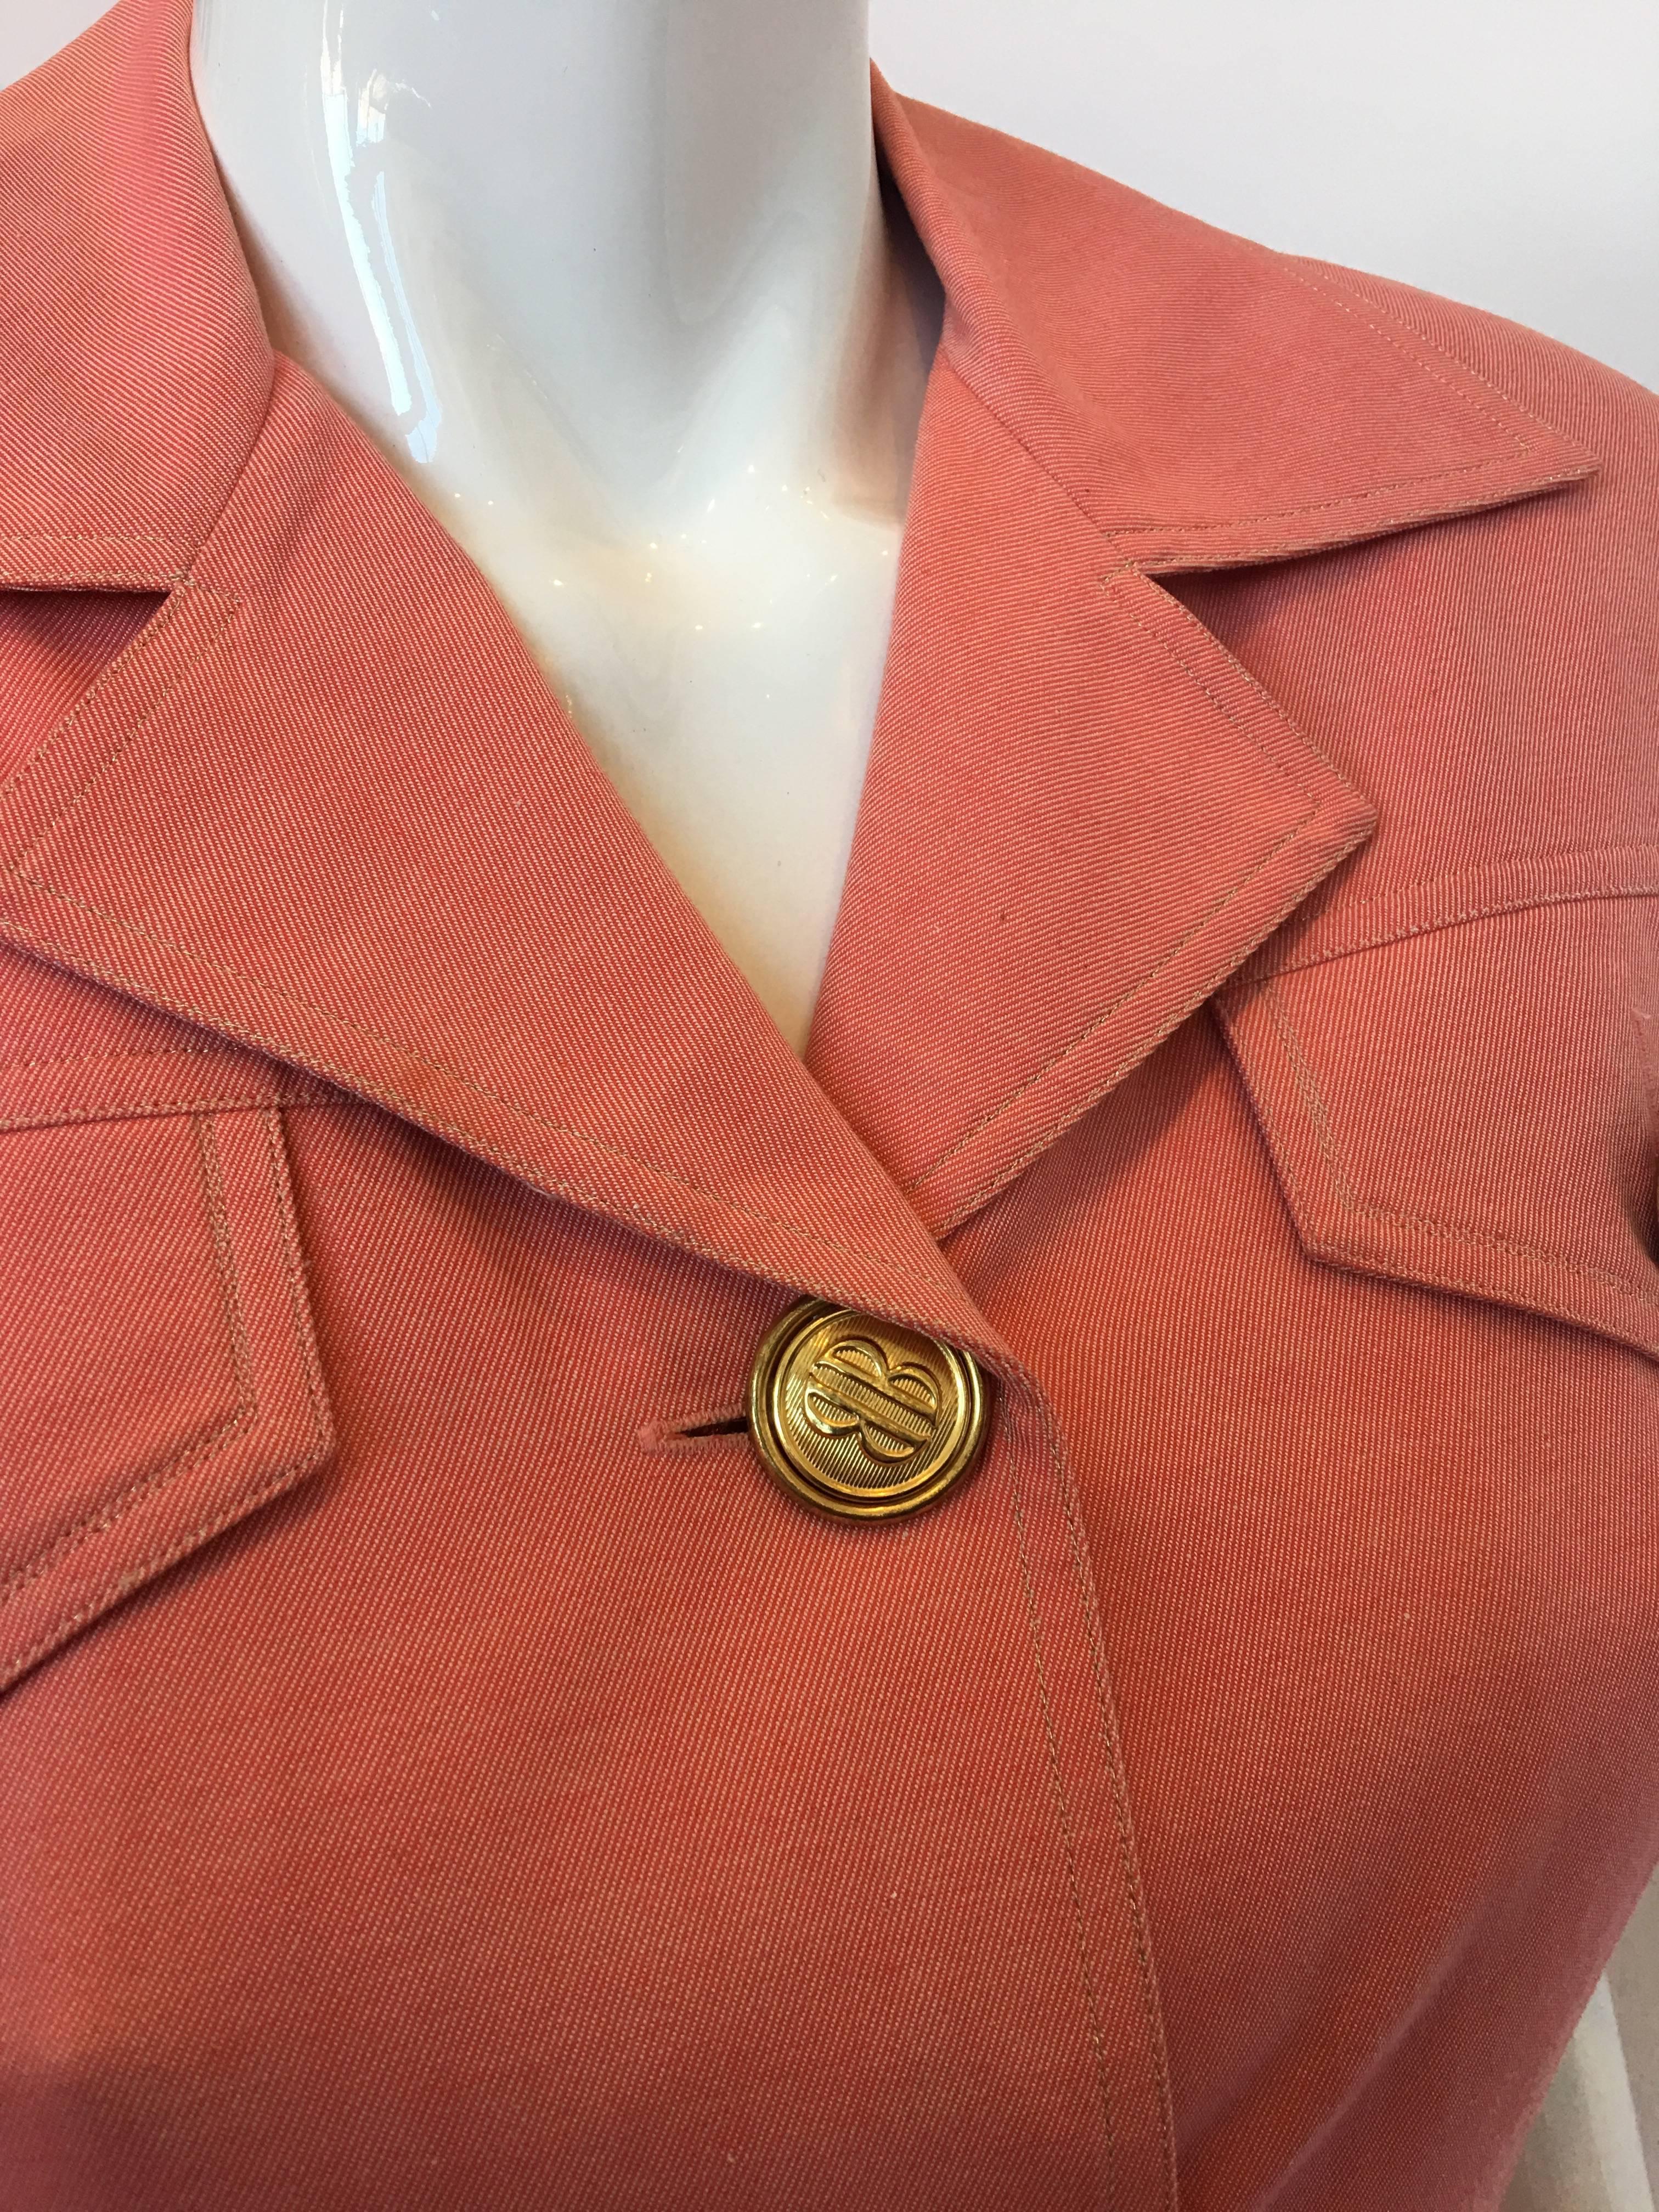 Bill Blass Salmon Pink Button Up Uniform Suit Dress, 1990s  For Sale 2